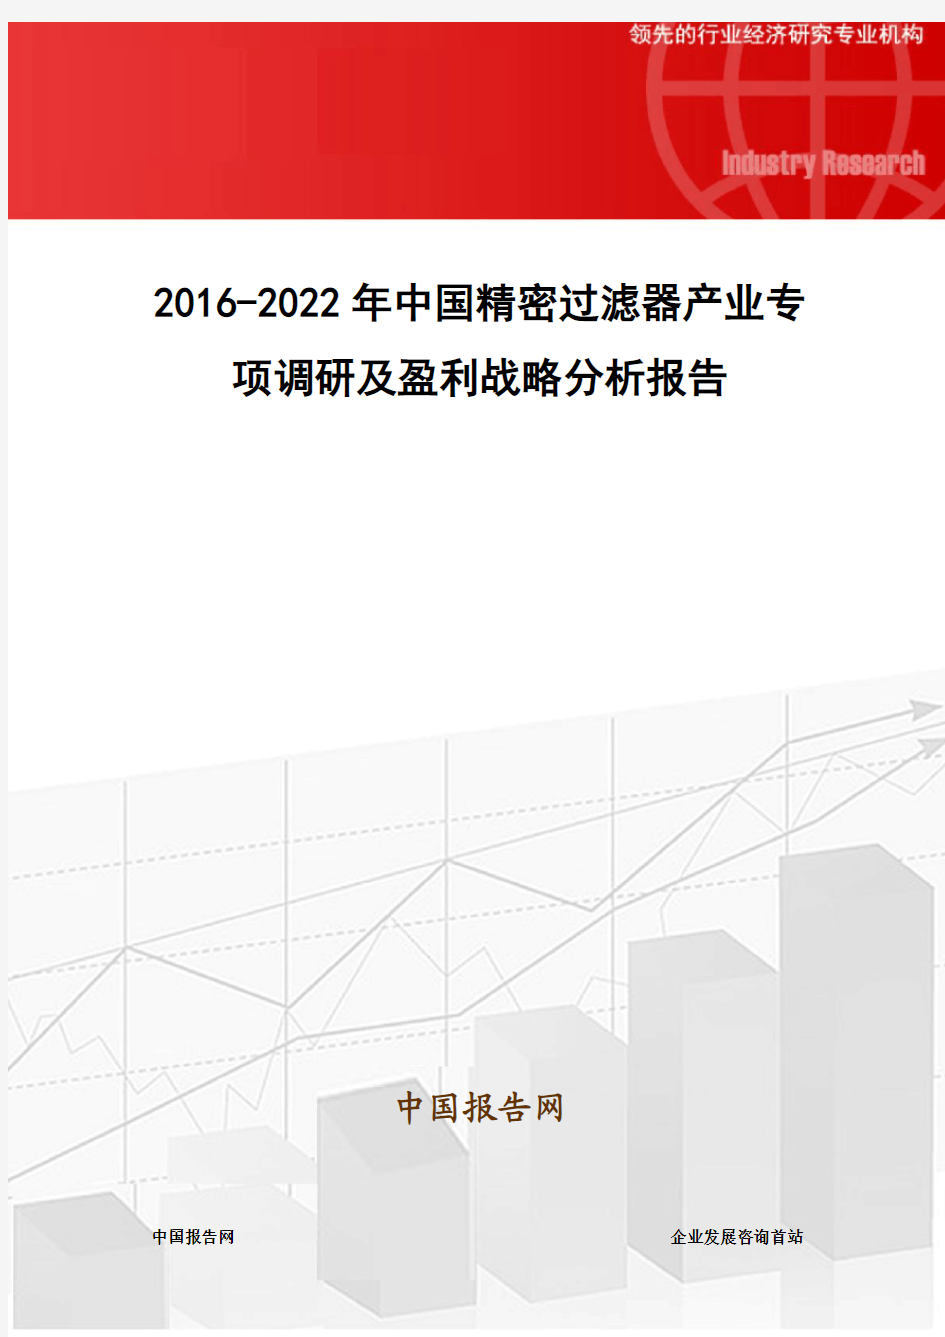 2016-2022年中国精密过滤器产业专项调研及盈利战略分析报告